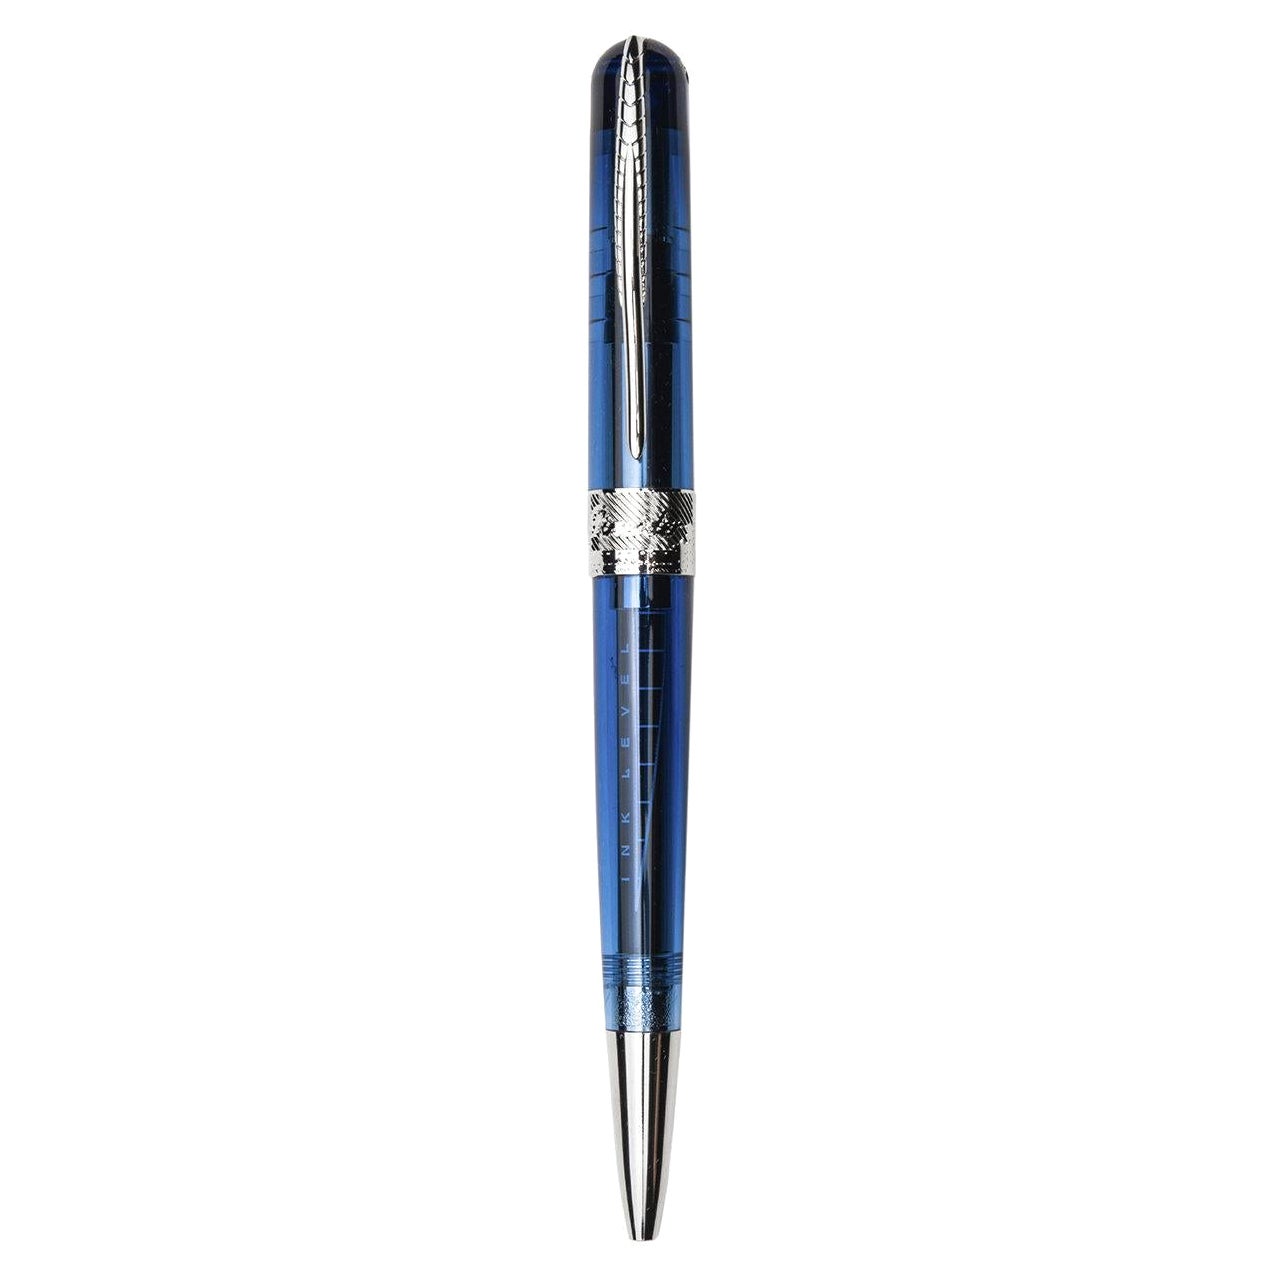 Avatar UR Blue Ballpoint Pen For Sale